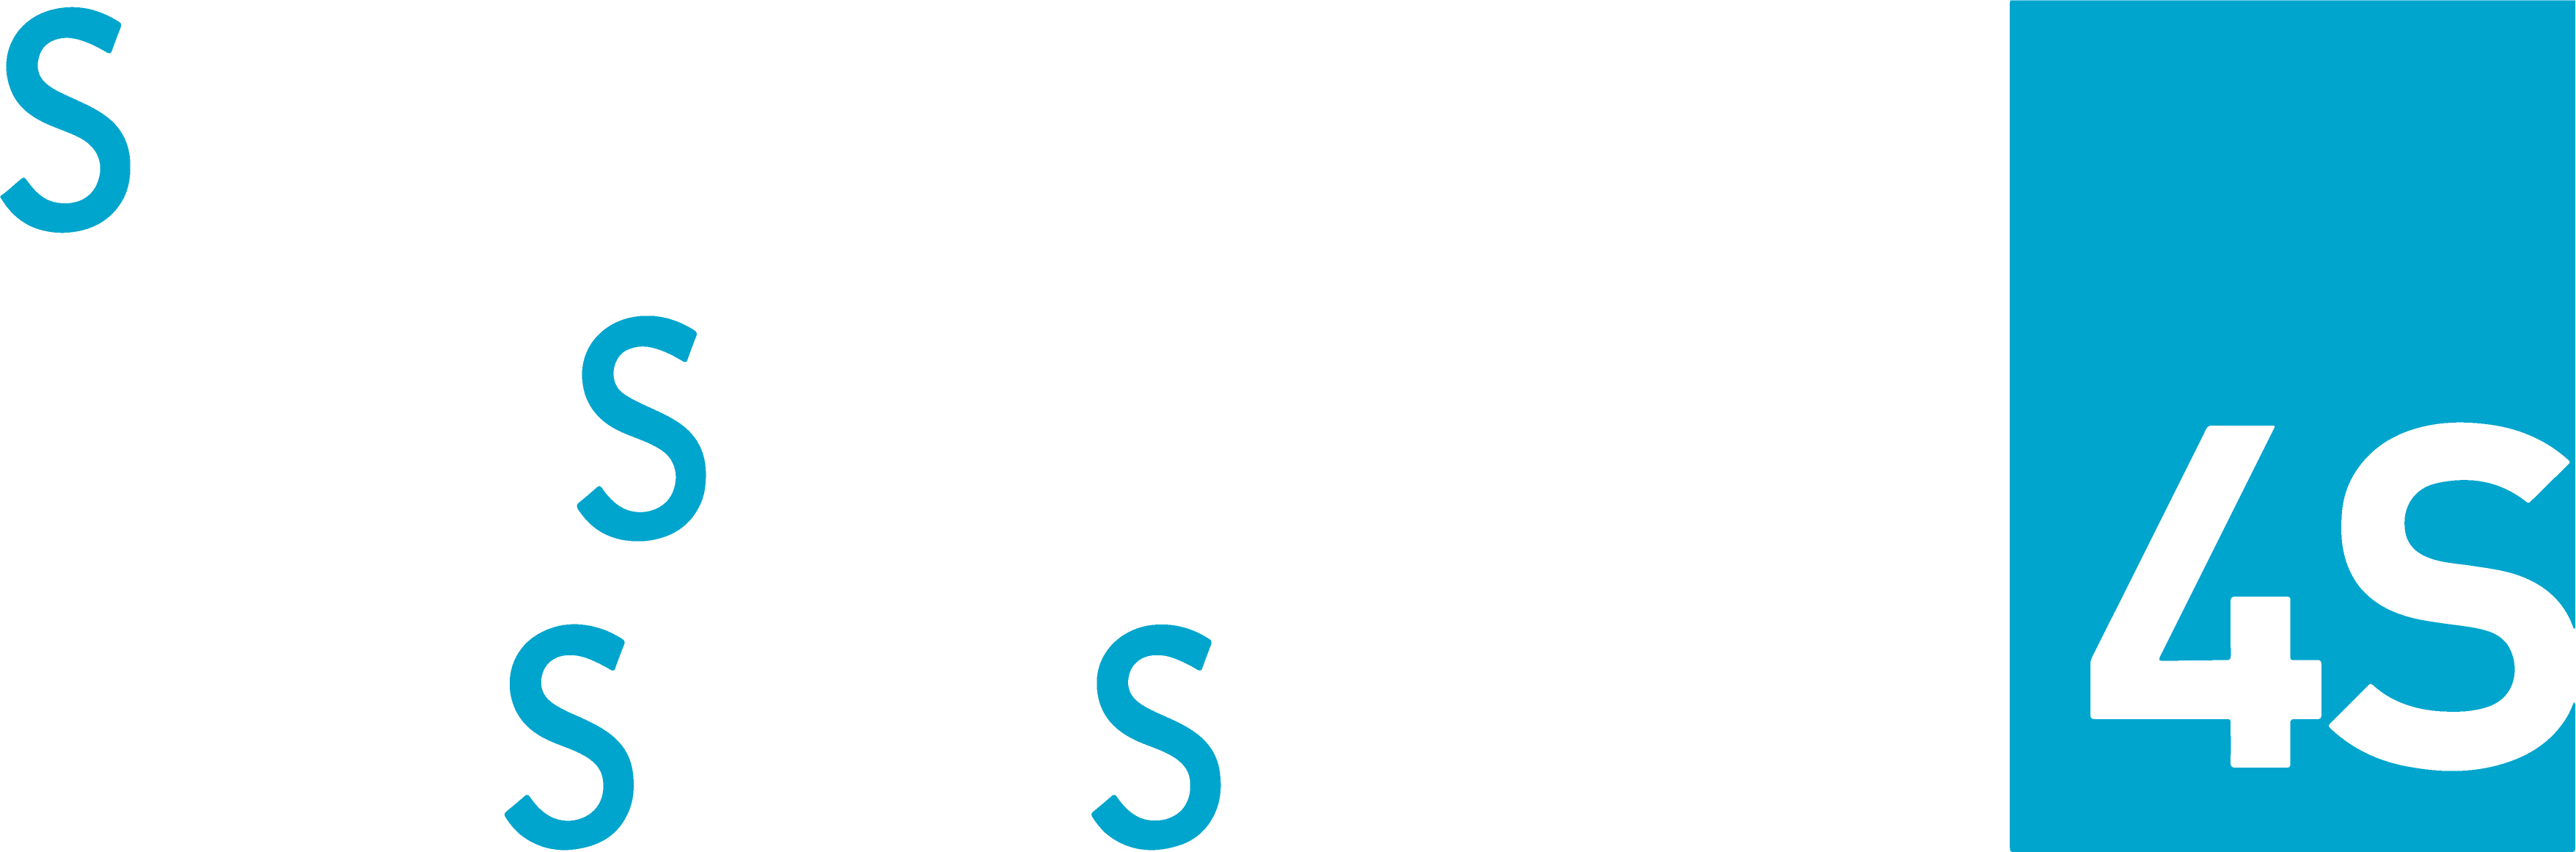 sunshade_logo